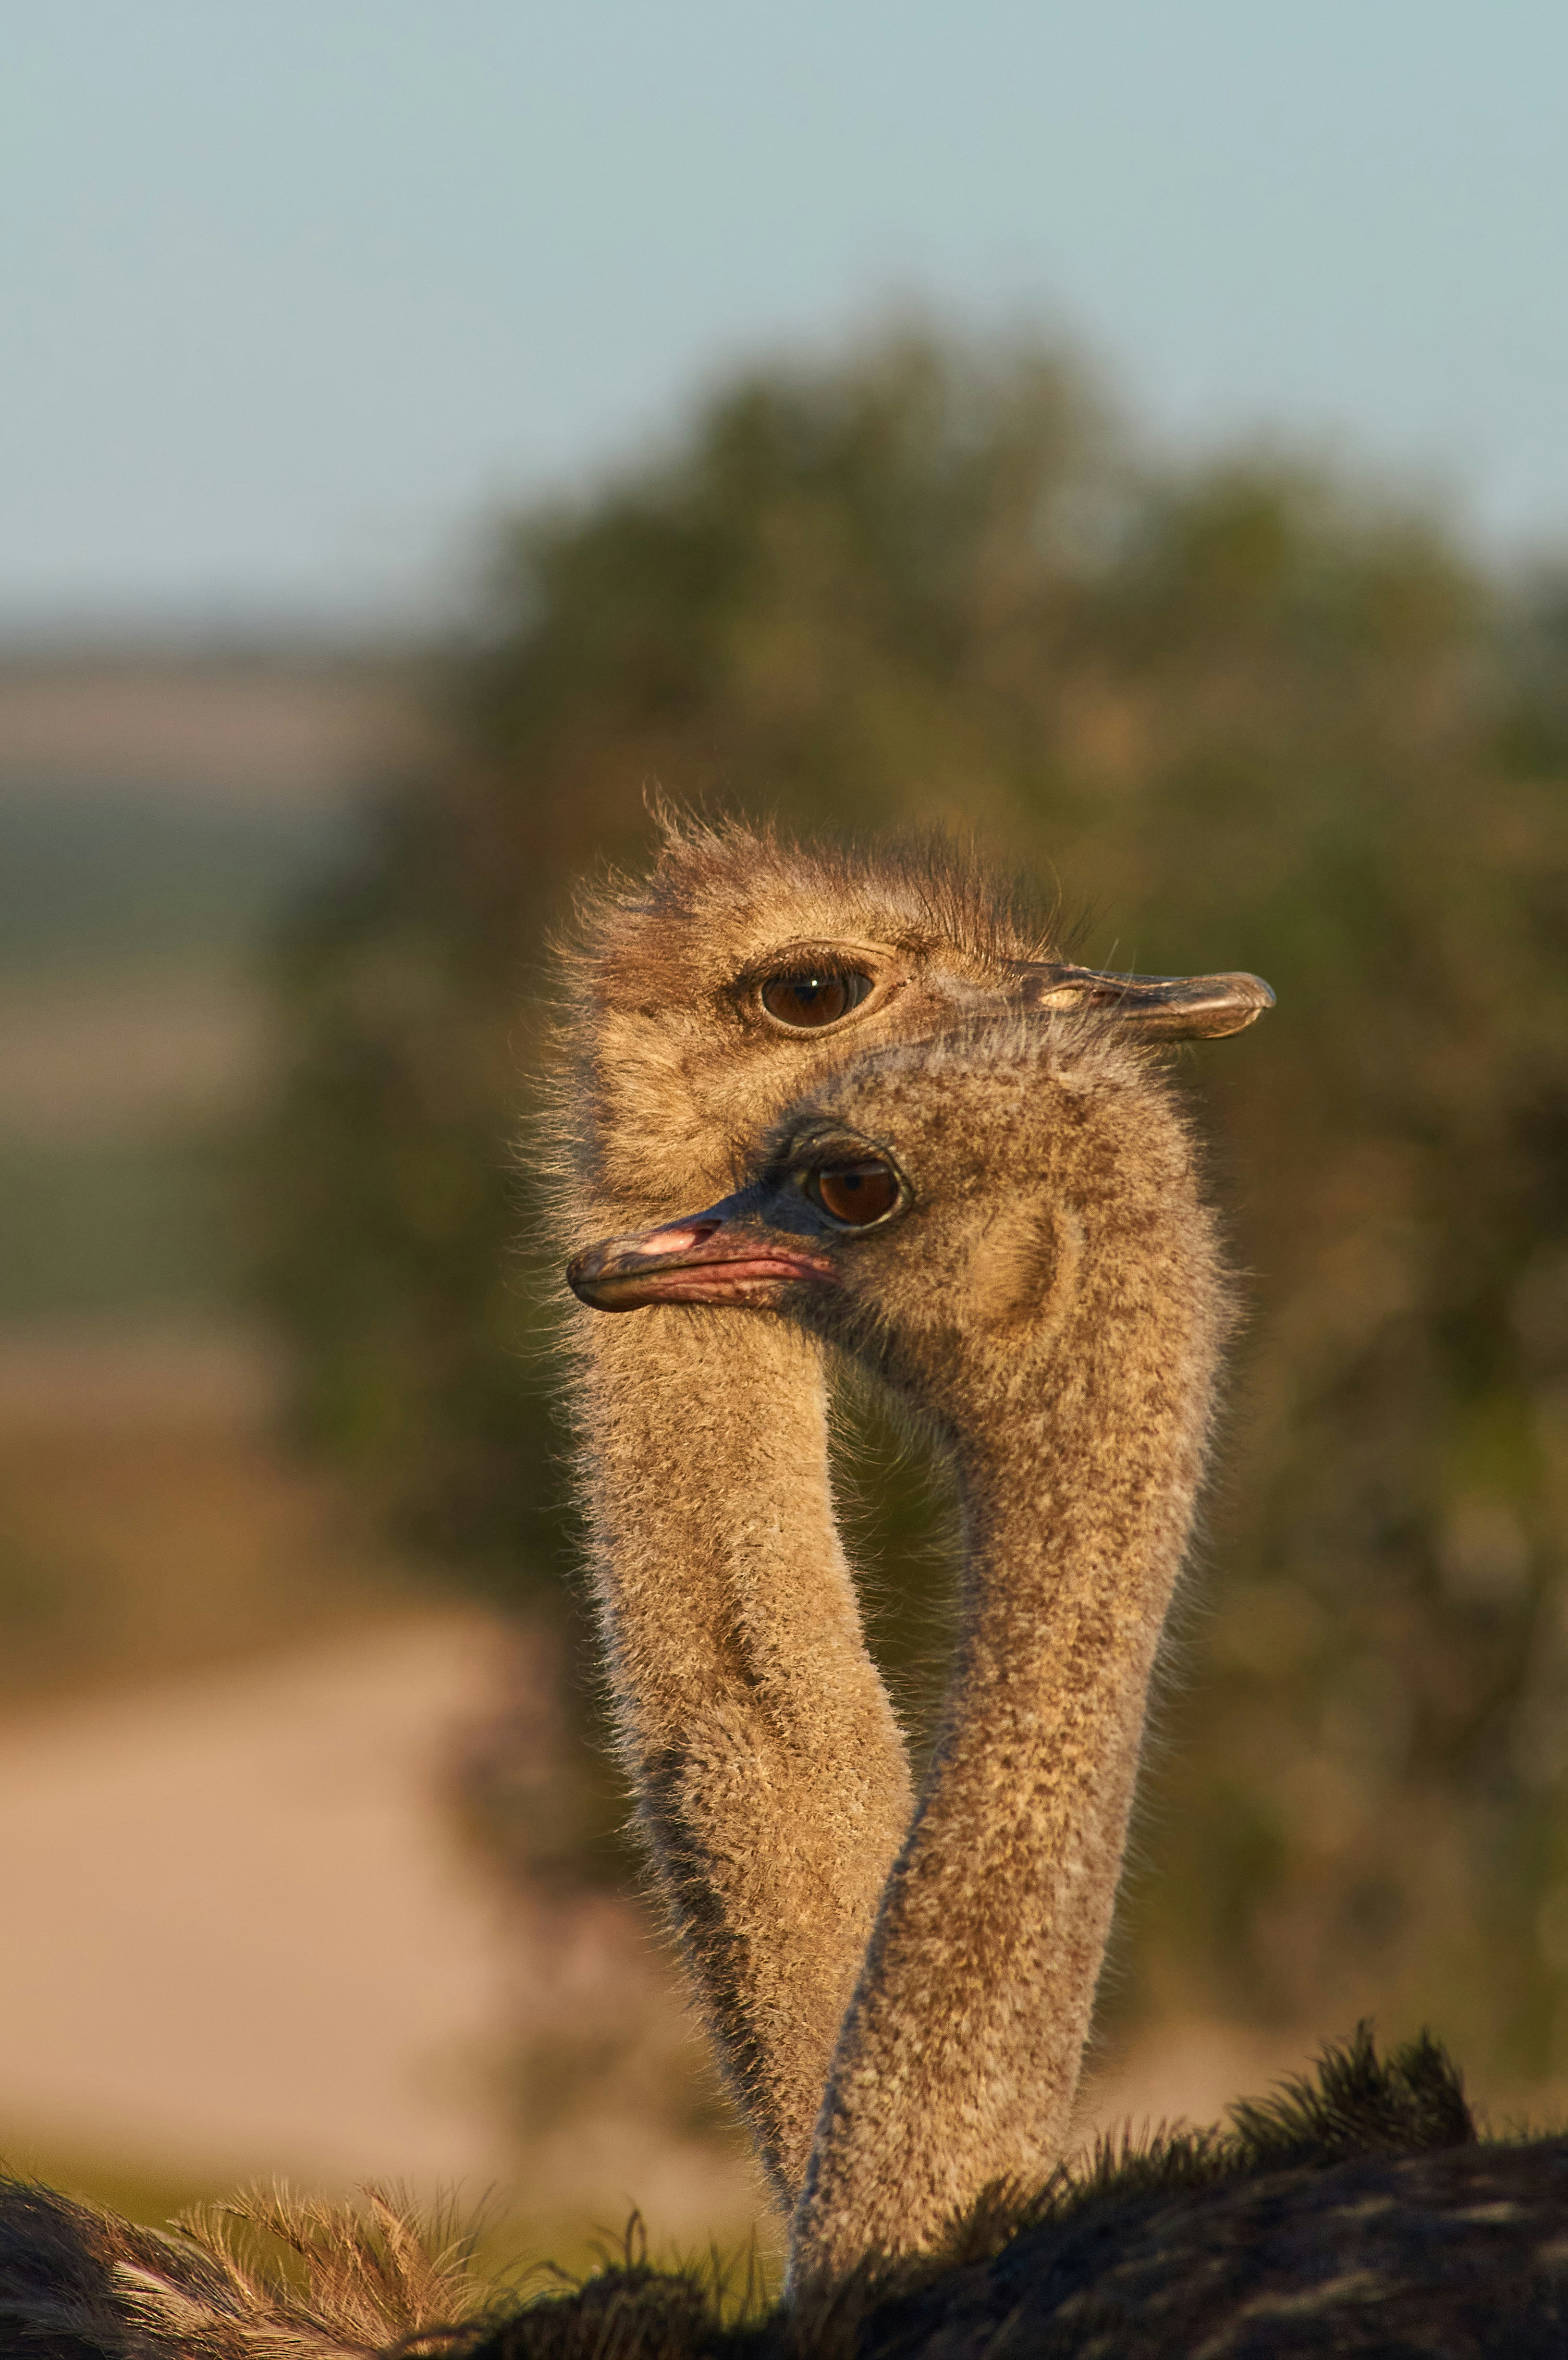 brown ostrich in tilt shift lens